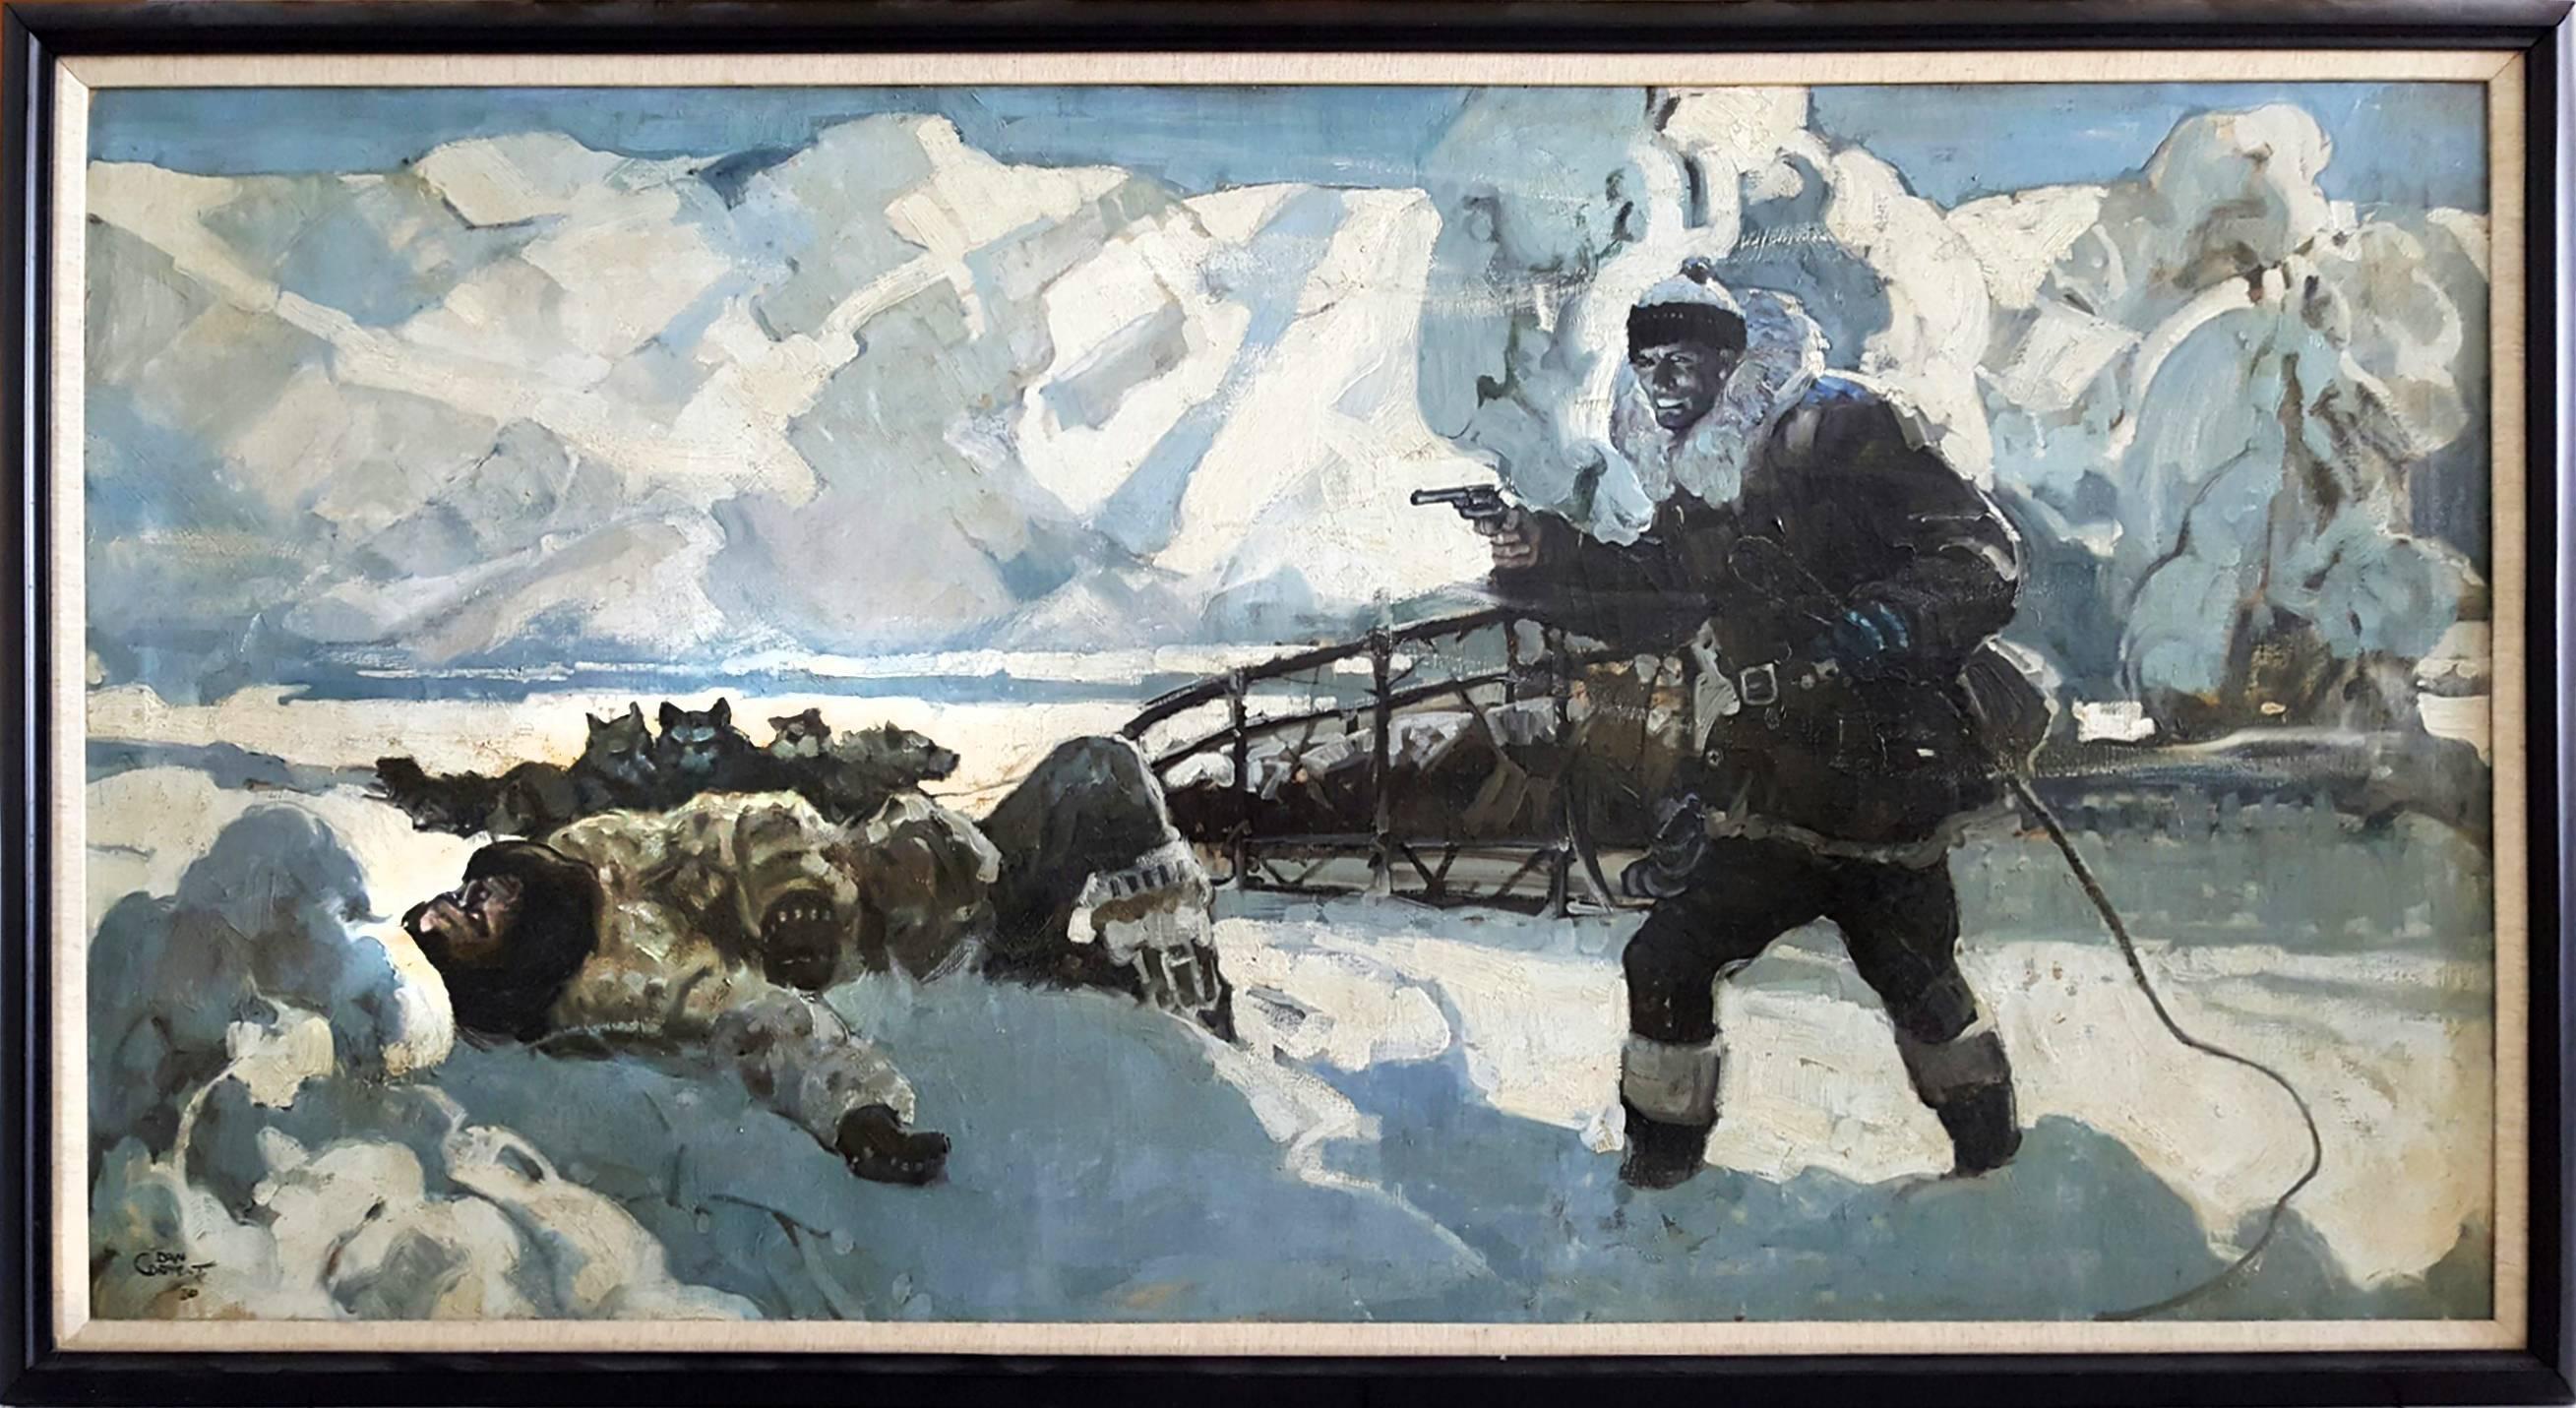 Alaskanische Husky-Hunde  - The Howl of the Malamute - Herren-Abenteurergeschichte – Painting von Dan Content